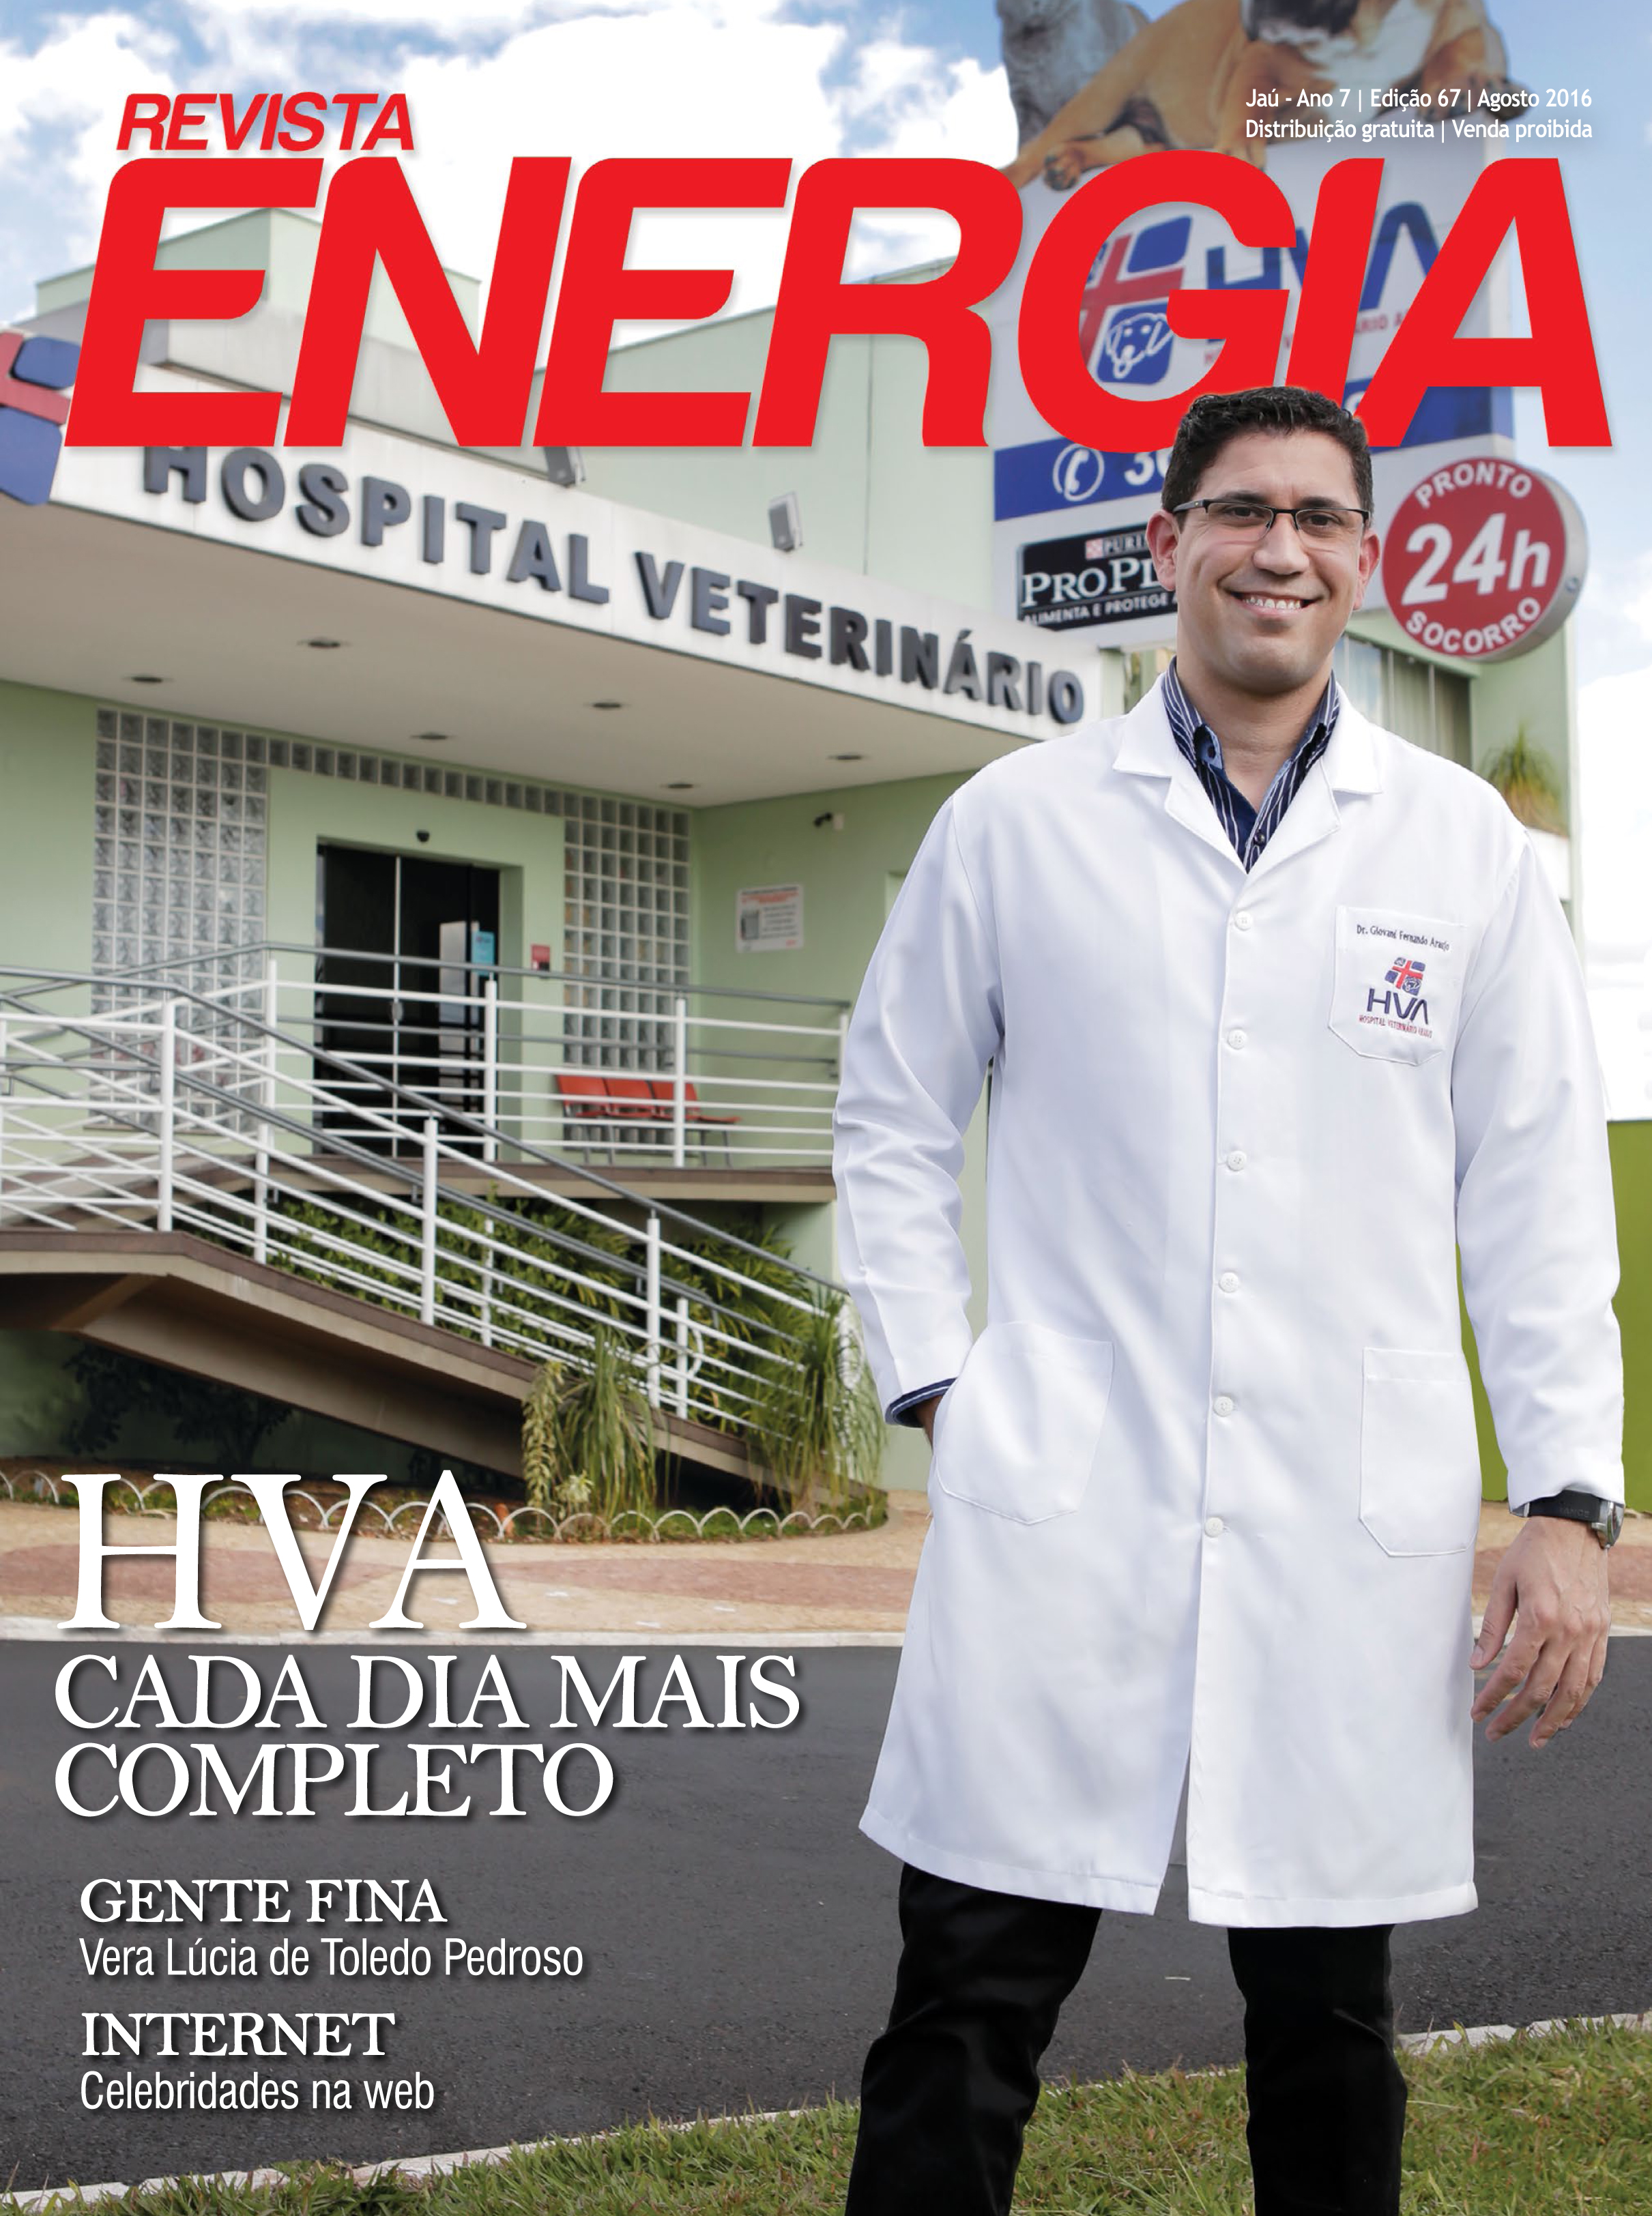 Revista Energia 67 - Edição Especial